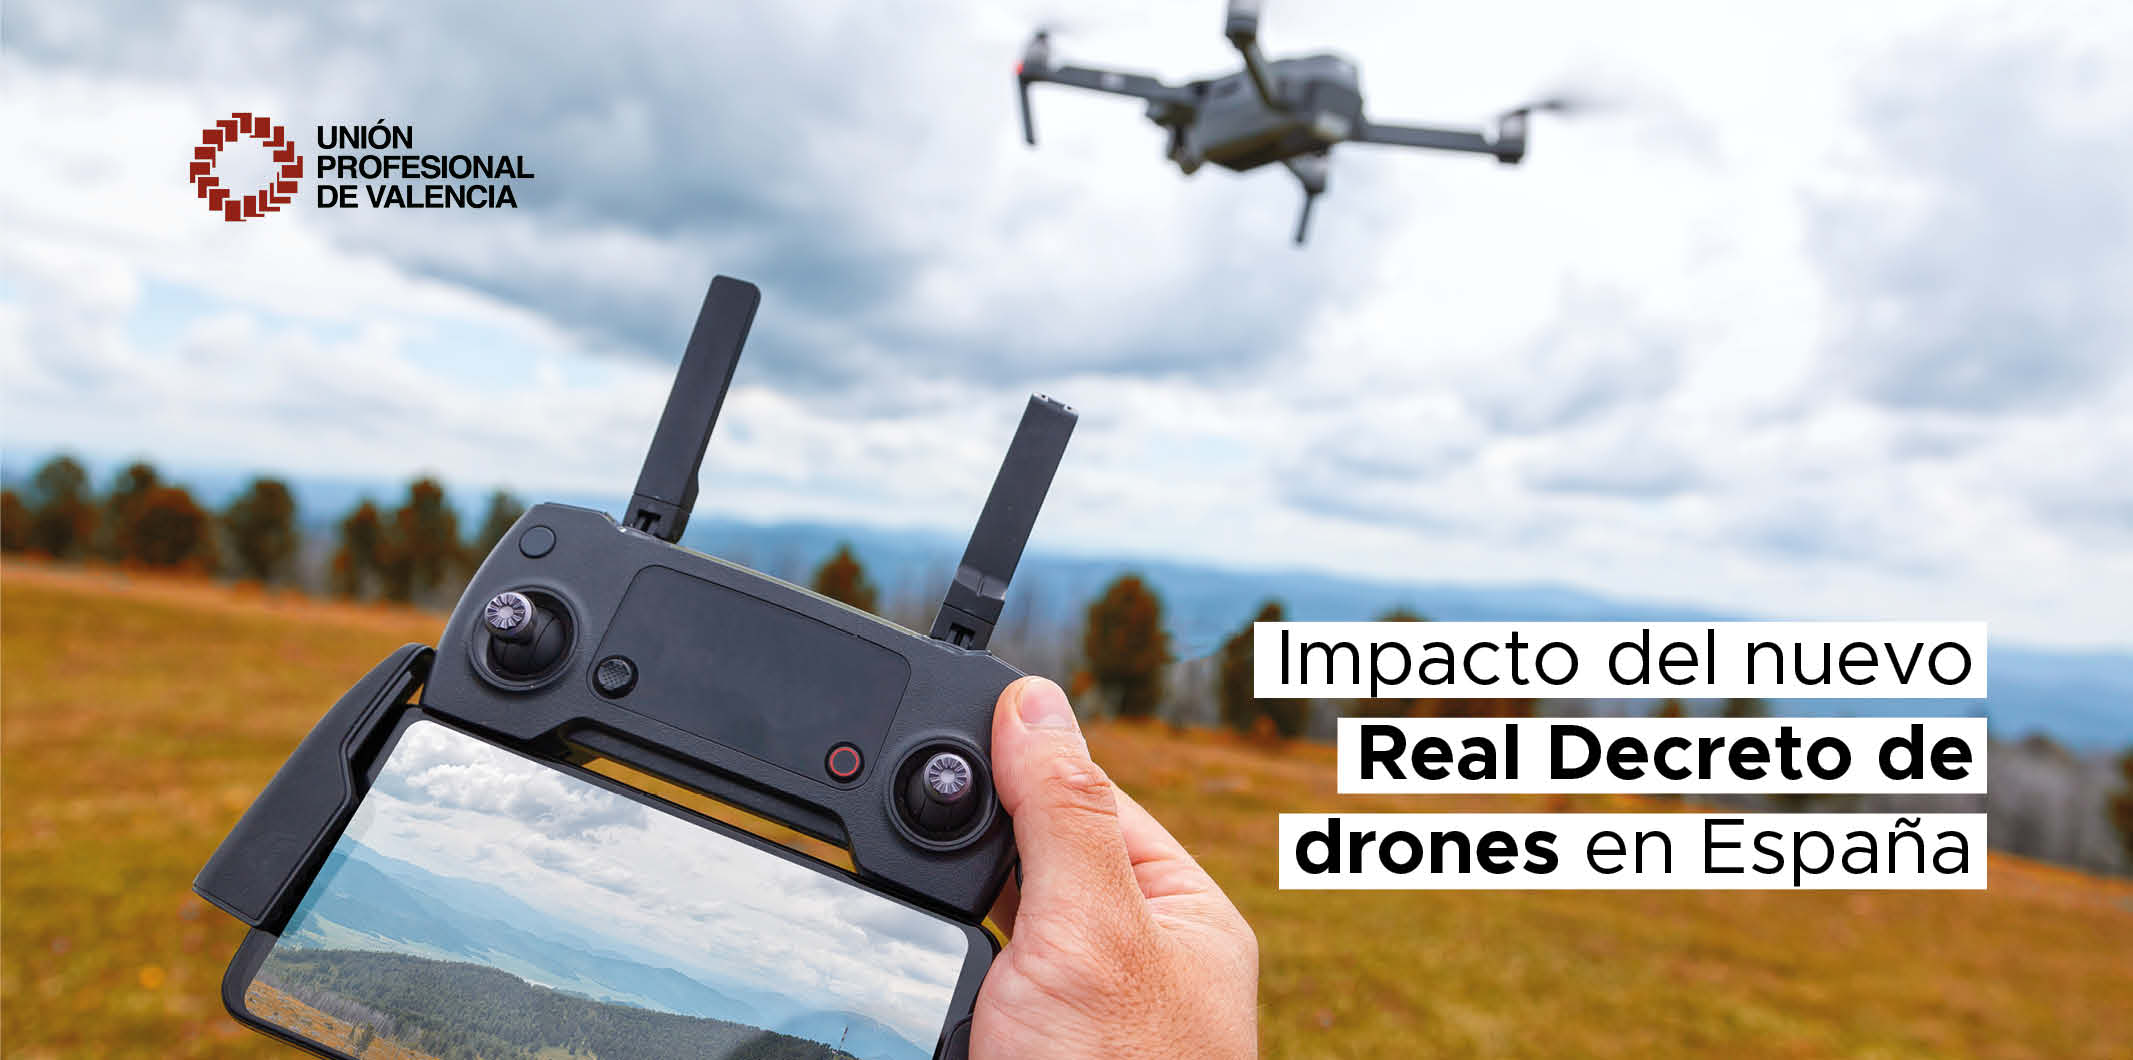 Desde el cielo: Impacto del nuevo Real Decreto de drones en España